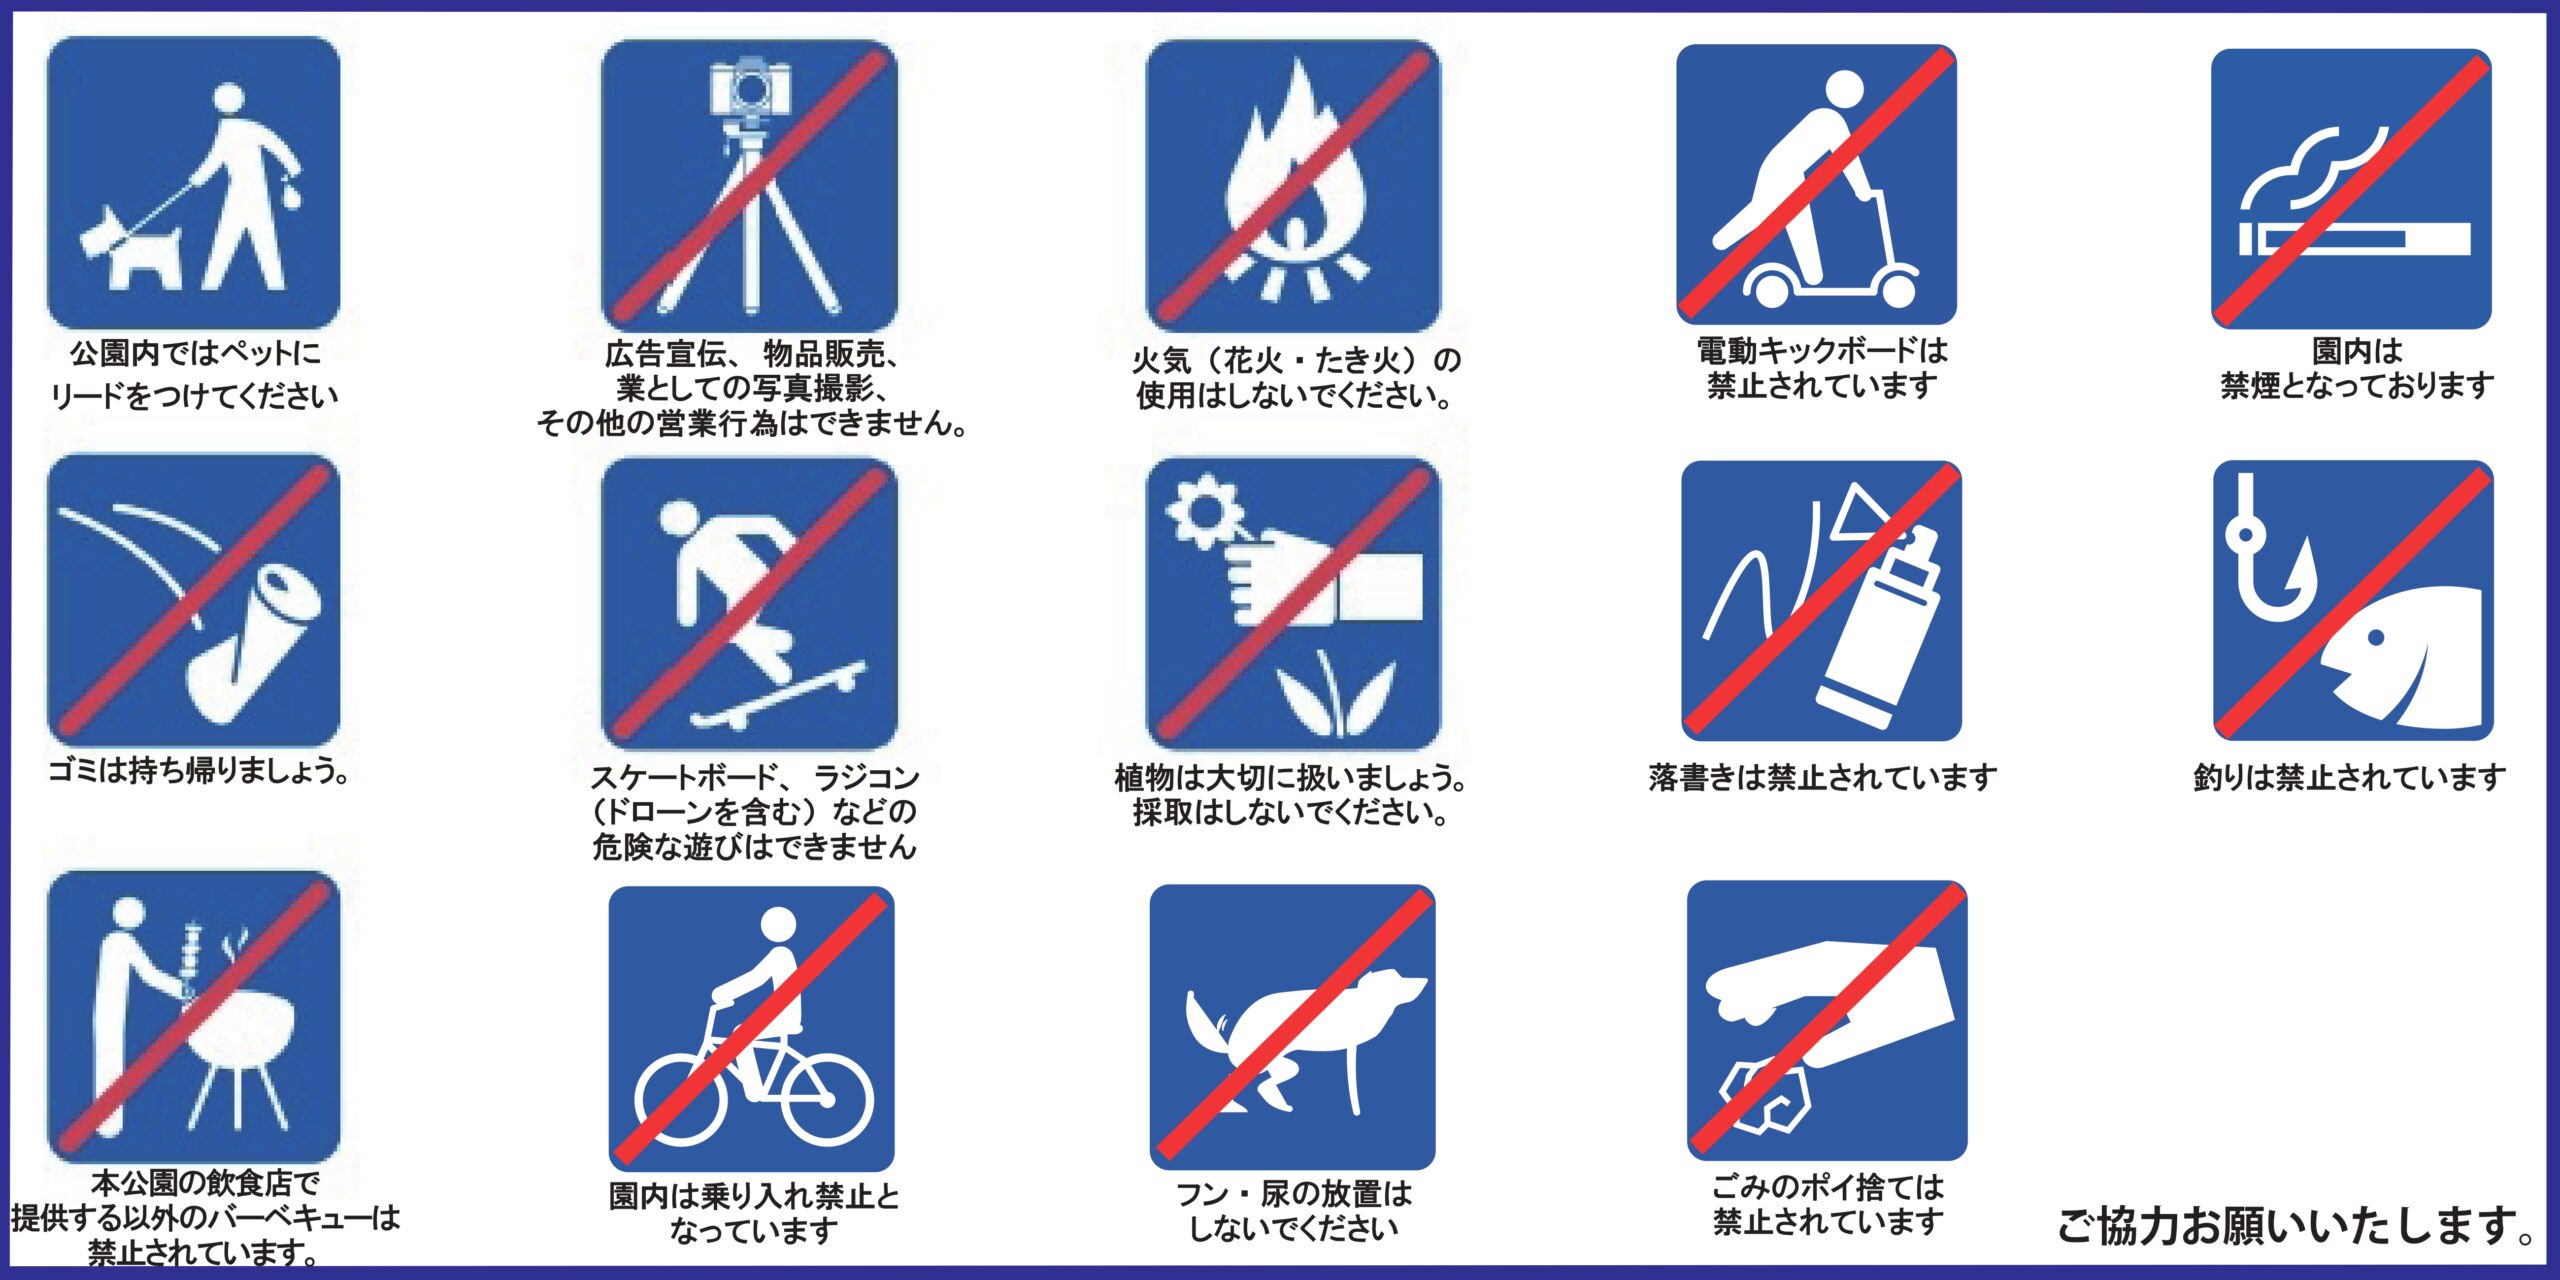 harumi futo park prohibitions